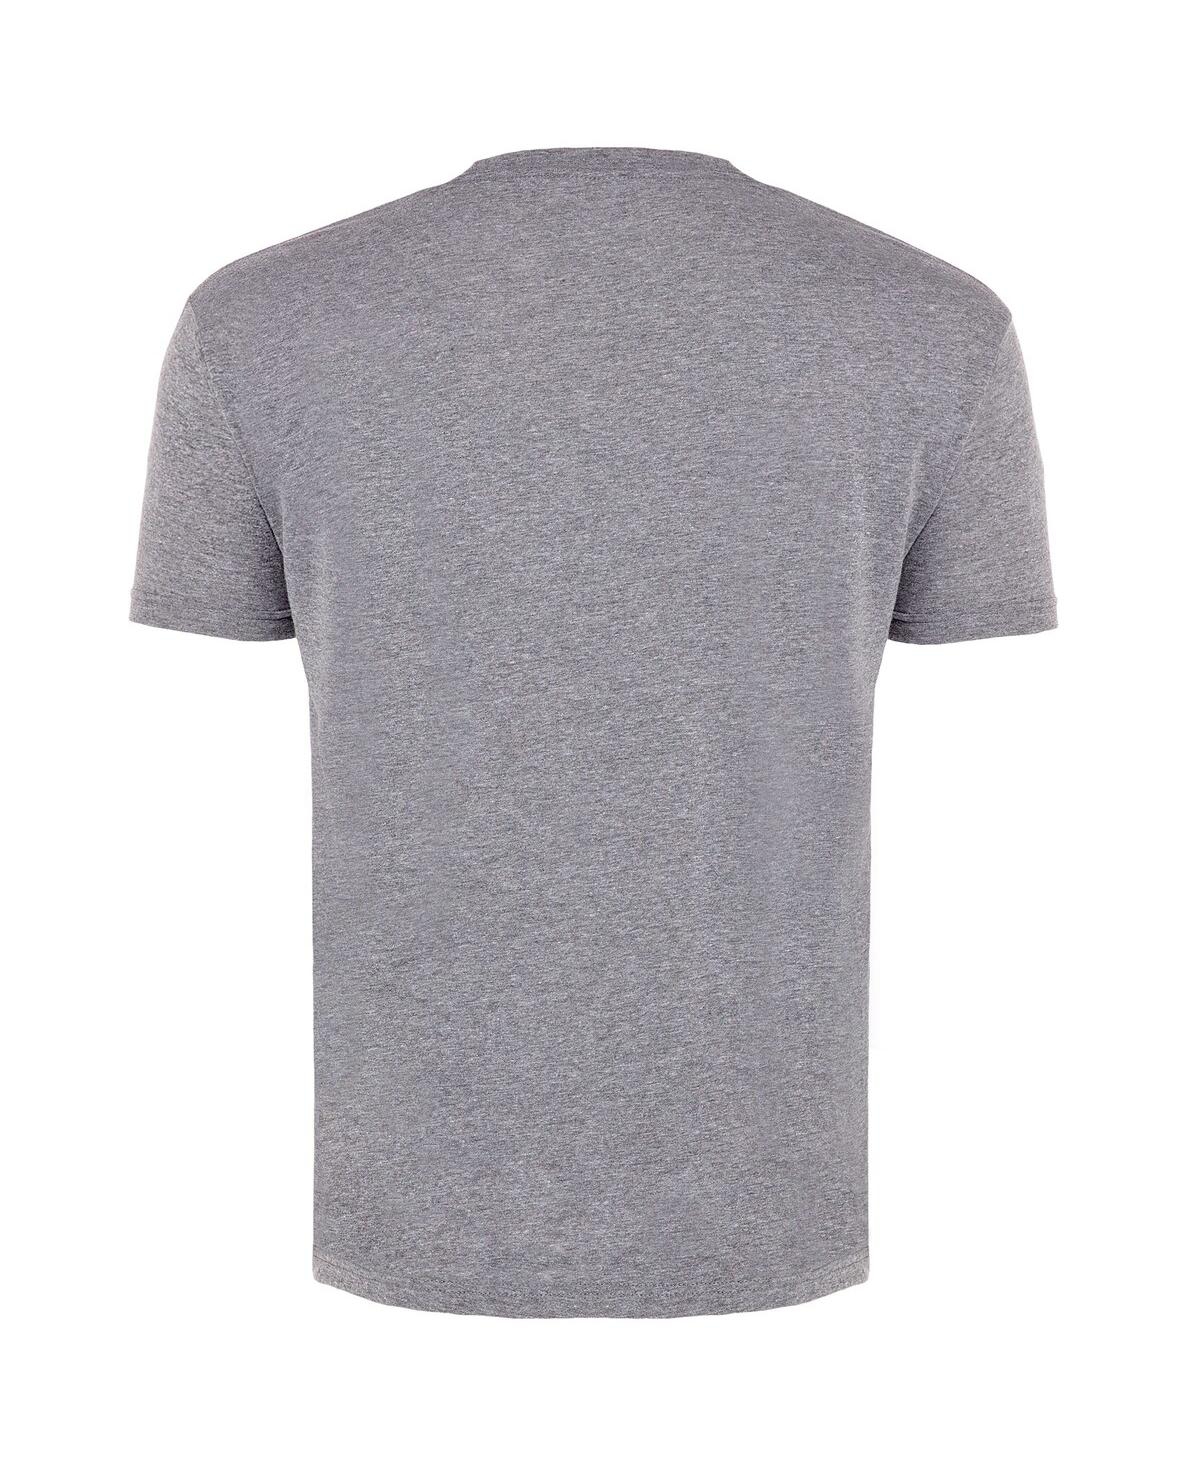 Shop Sportiqe Men's  Gray Boston Celtics 2022 Nba Finals Crest Comfy T-shirt